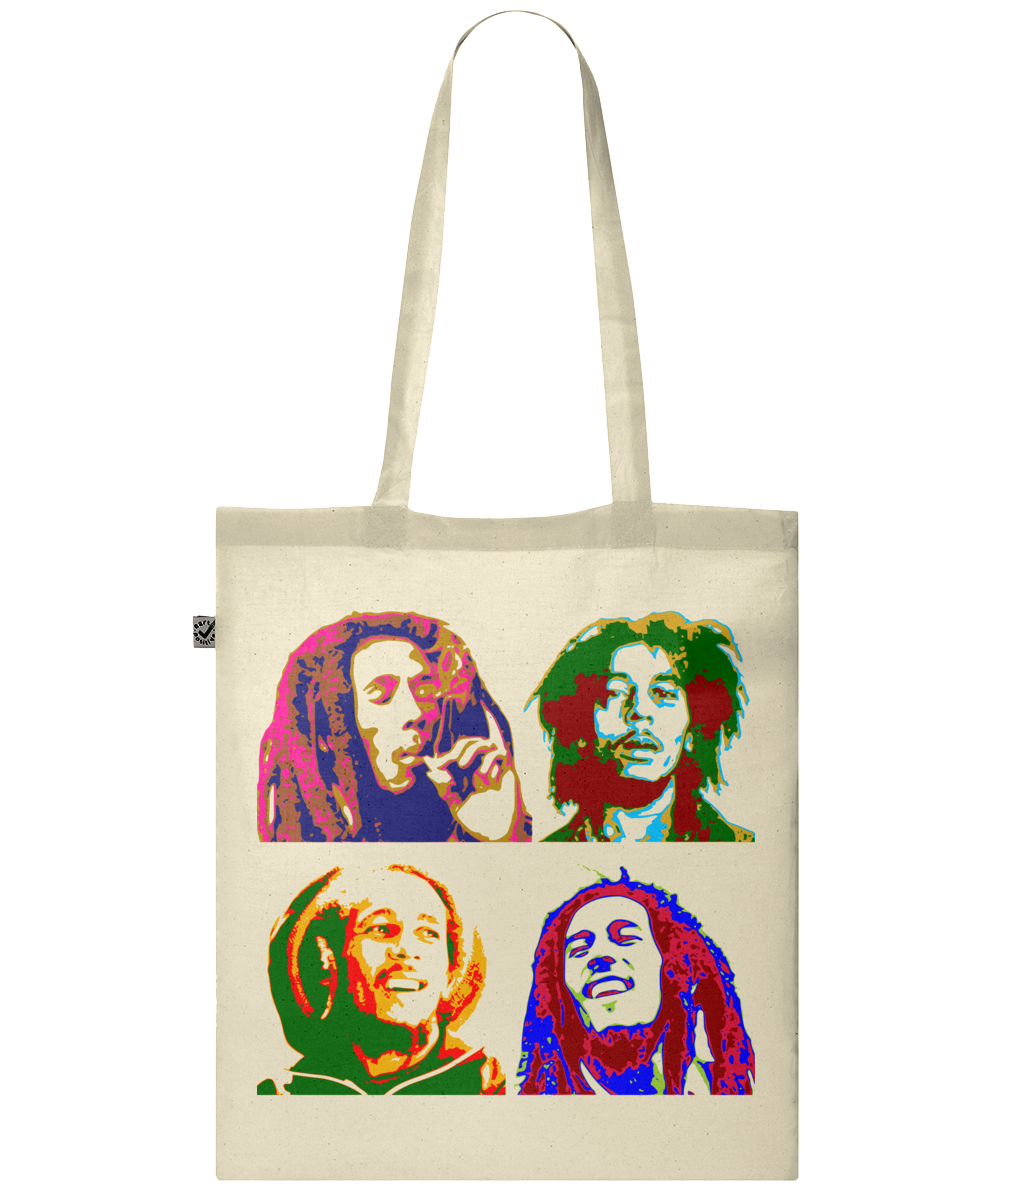 Bob Marley tote bag